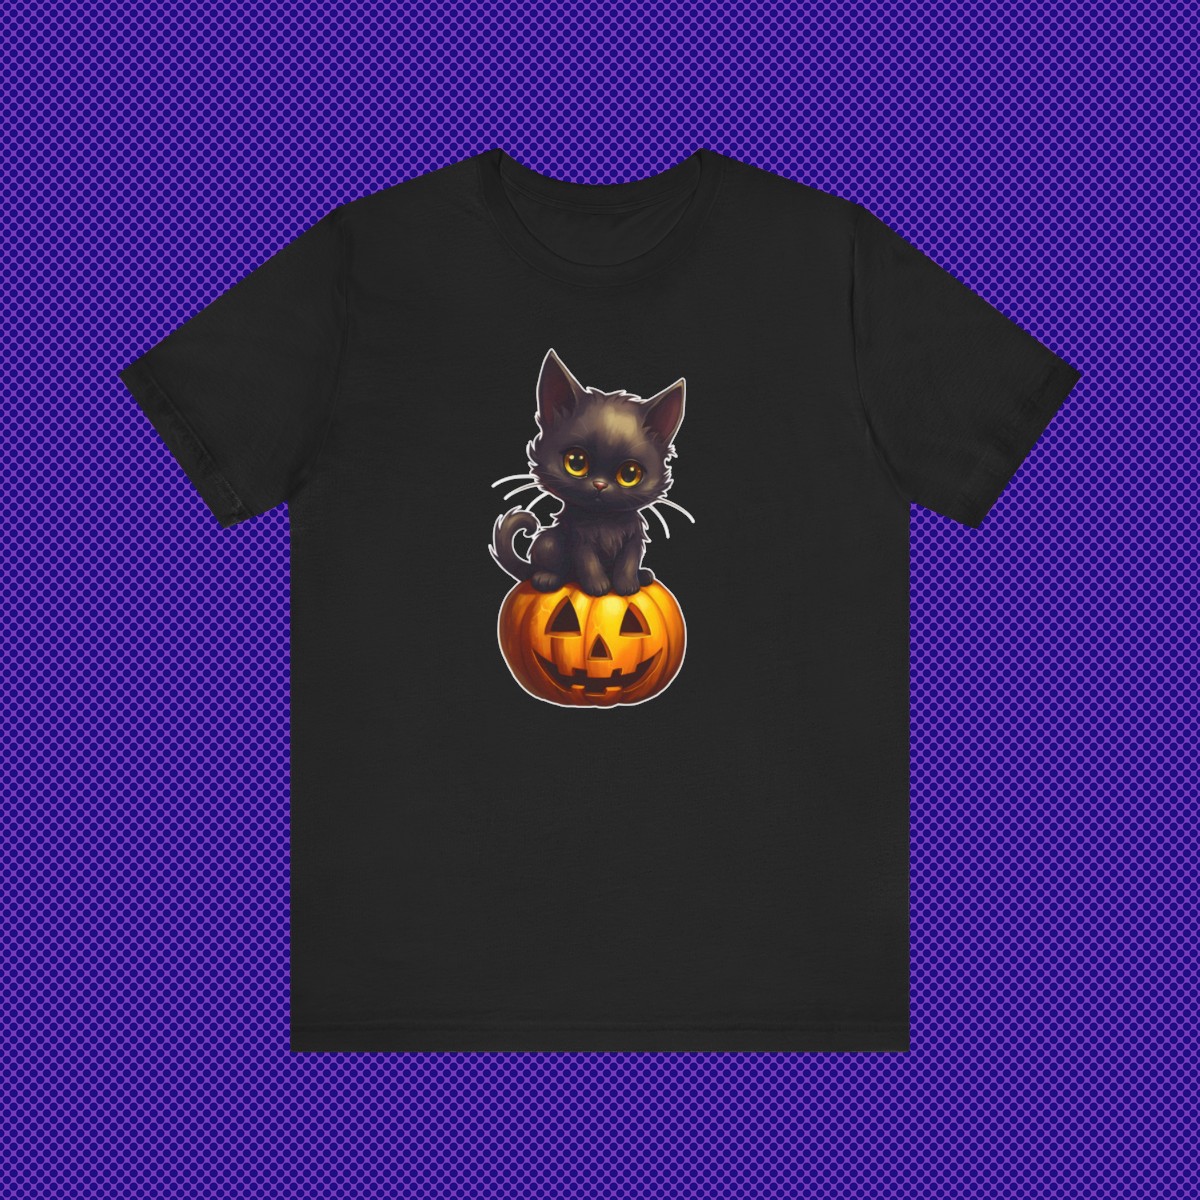 Black Kitten Cat Sitting on a Jack-o-lantern Halloween Pumpkin Unisex Jersey Short Sleeve Tee product main image